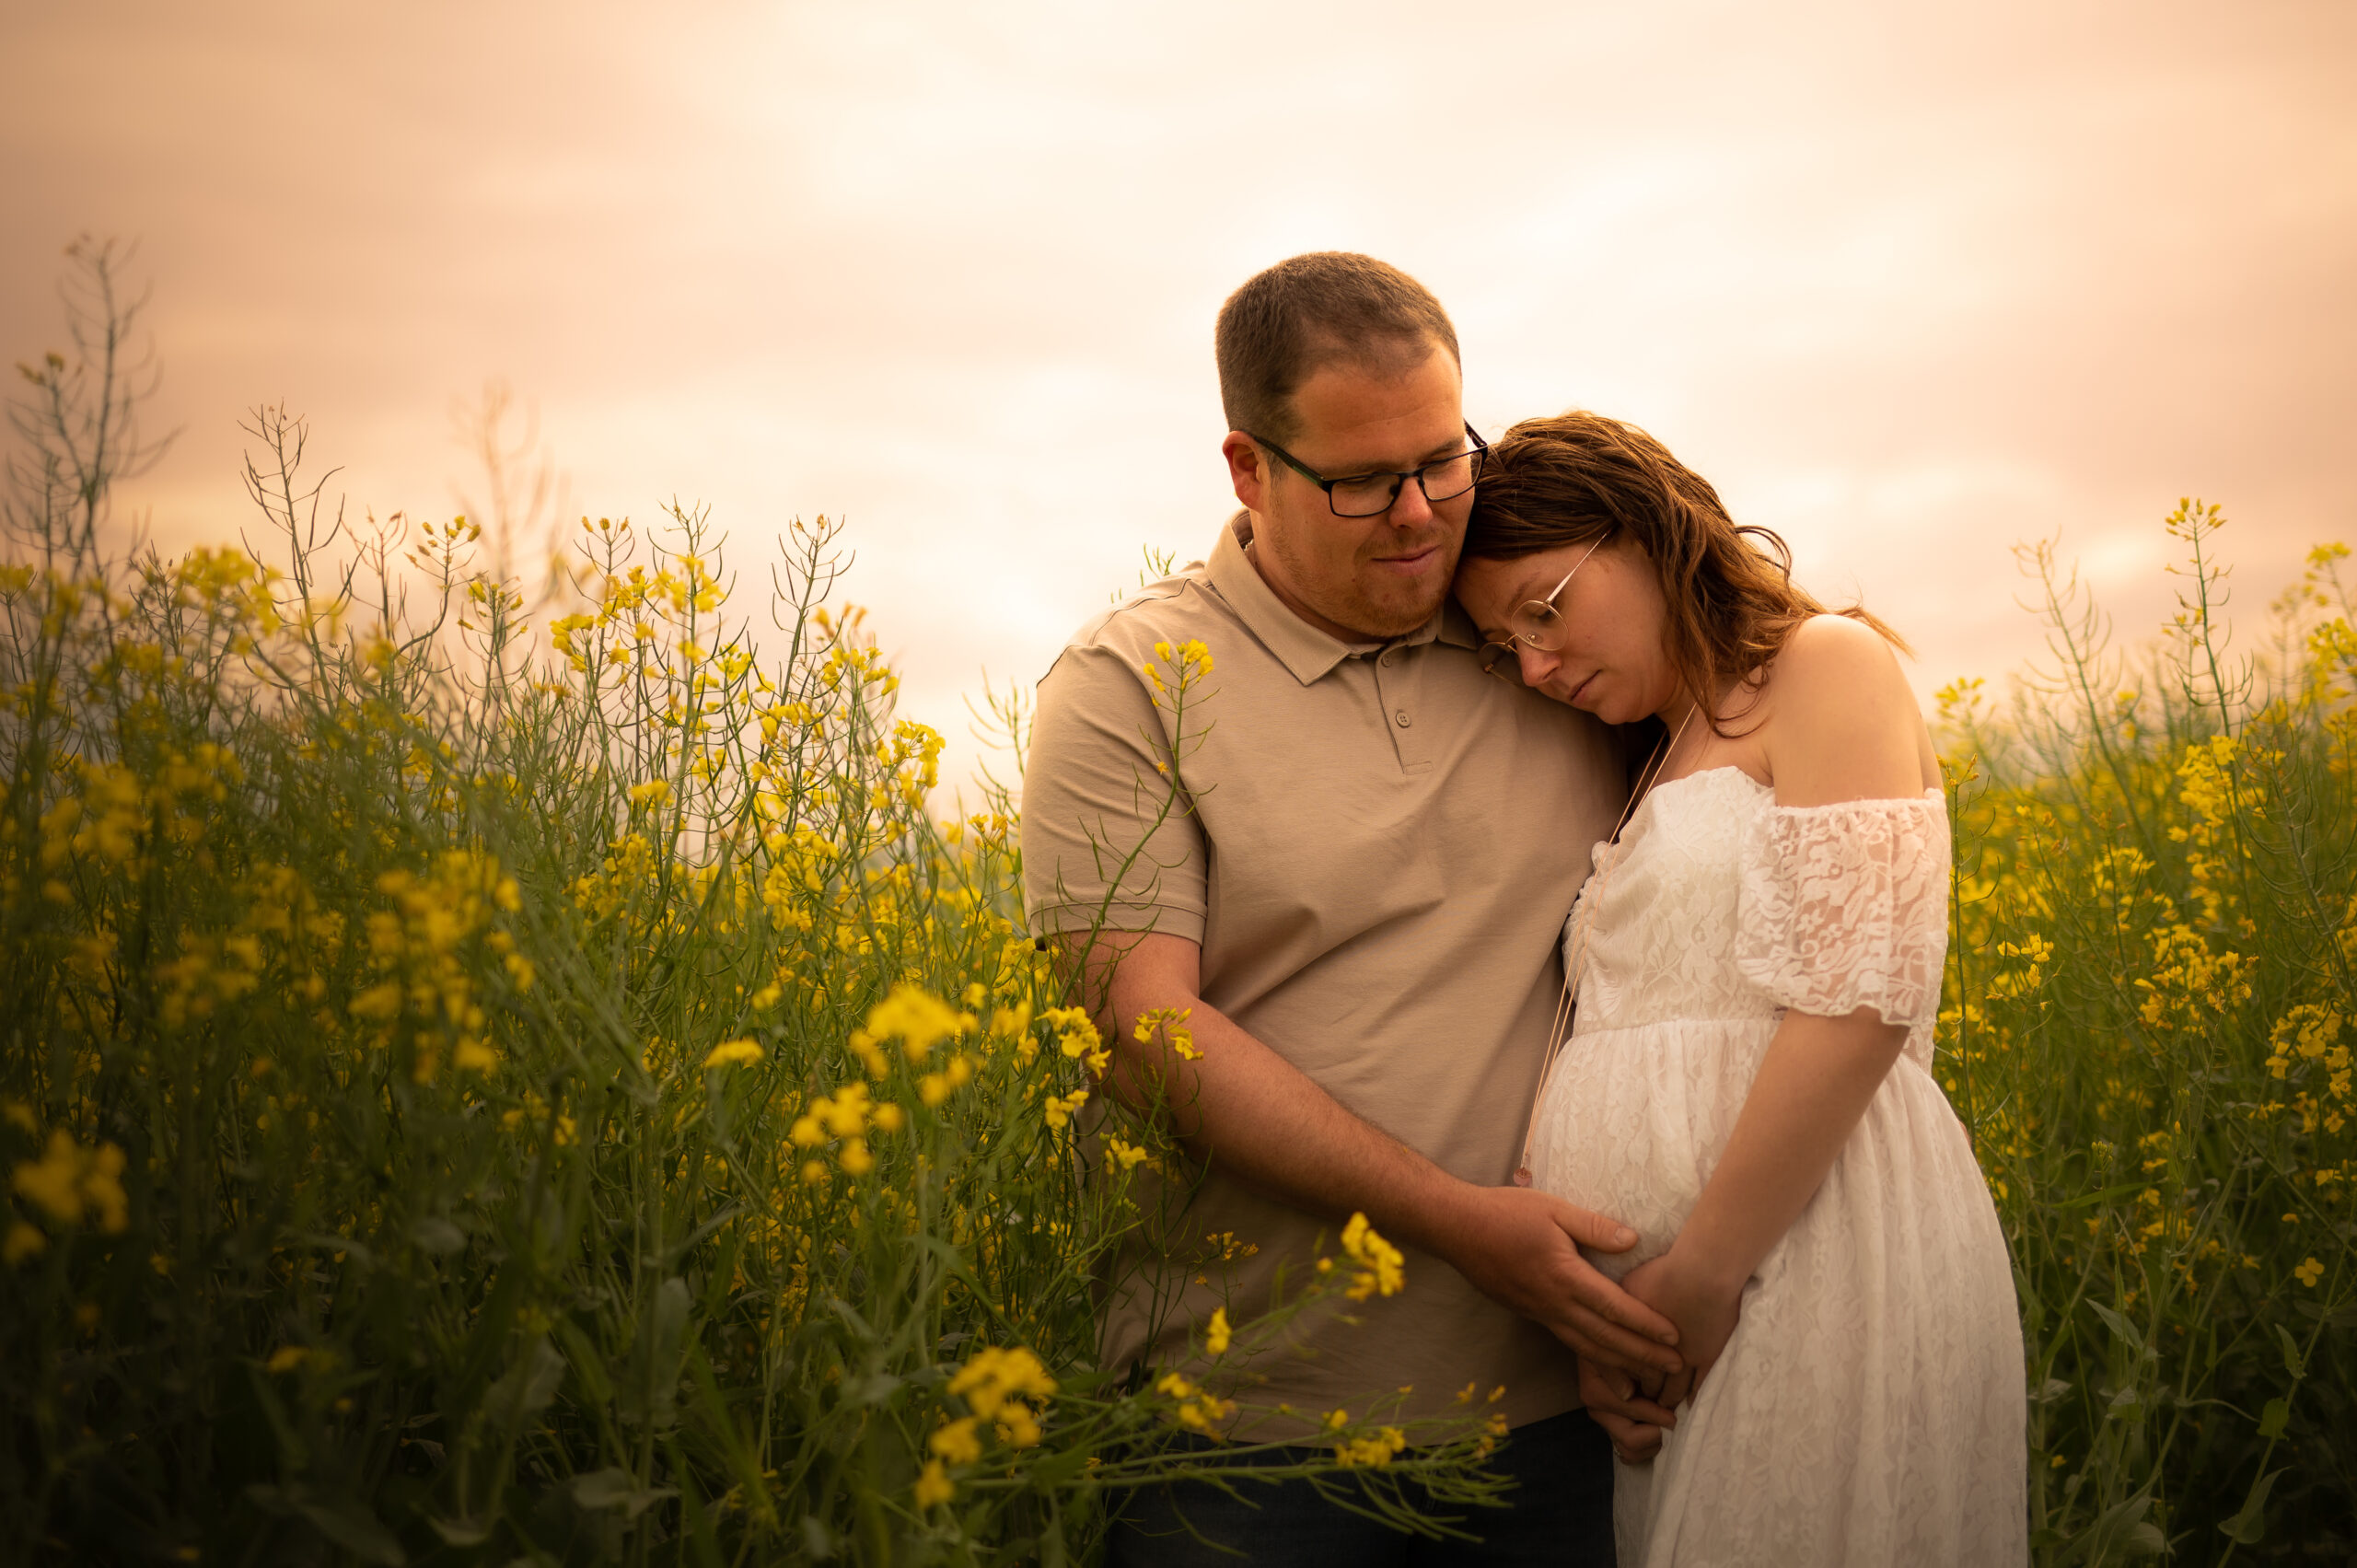 belle photo grossesse couple complcité extérieur photographe femme robe de grossesse couleurs chaude fleurs jaunes champ fleuris tendresse futur bébé